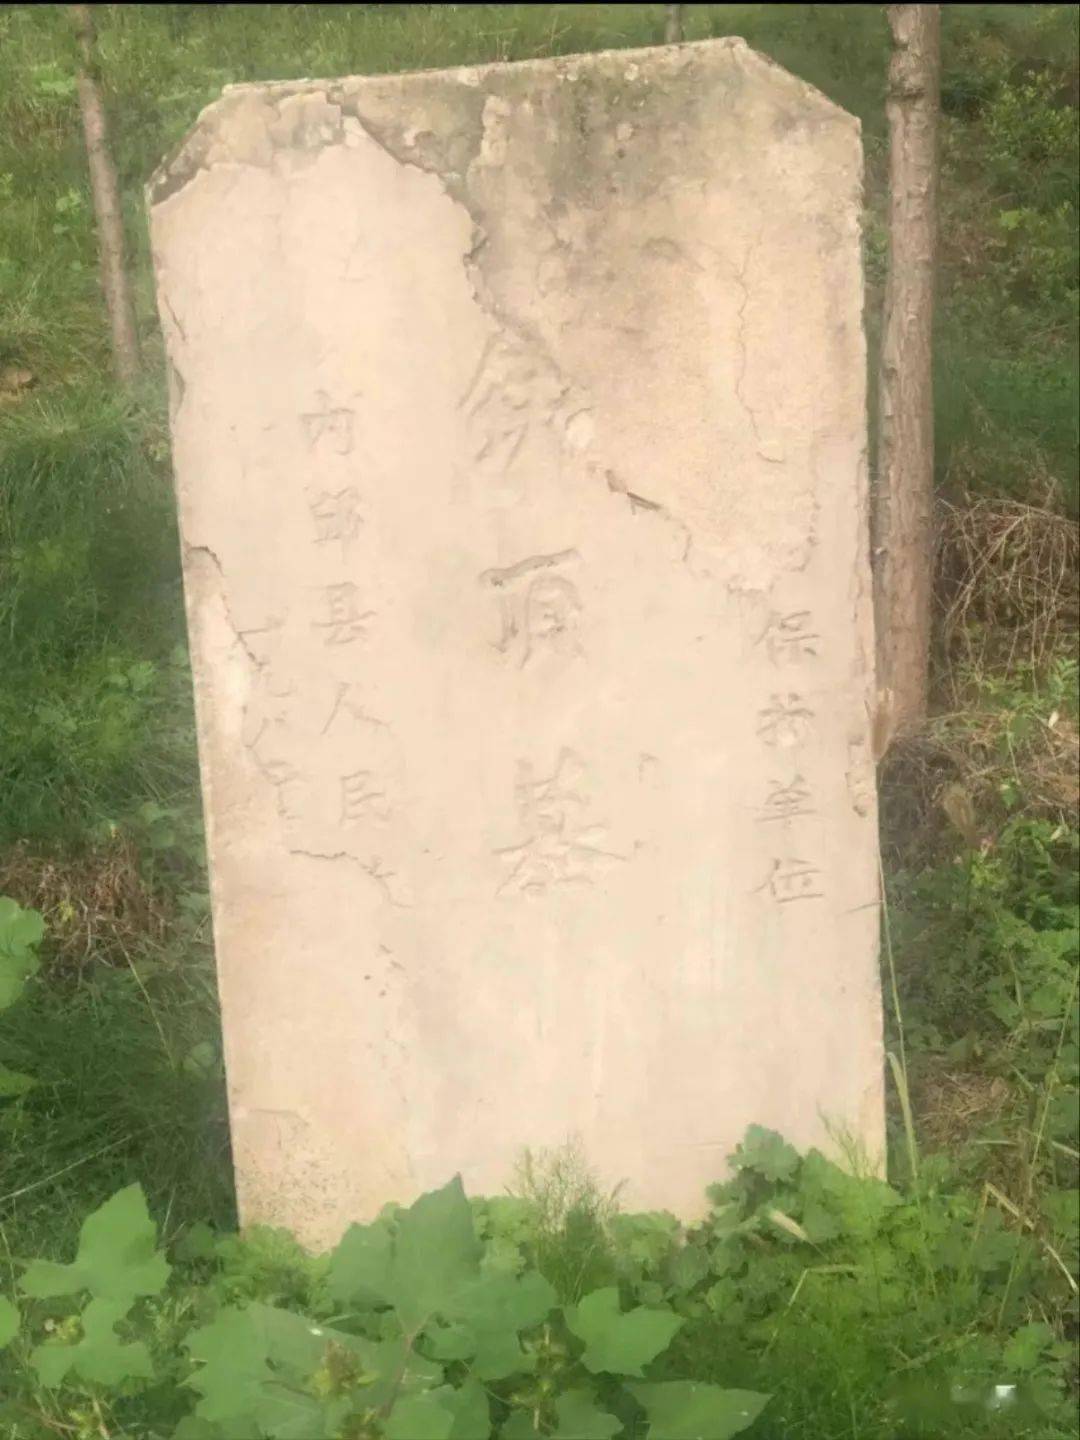 张宾墓俗称铁顶墓,位于内丘县城南6公里的金店镇铁顶墓村内